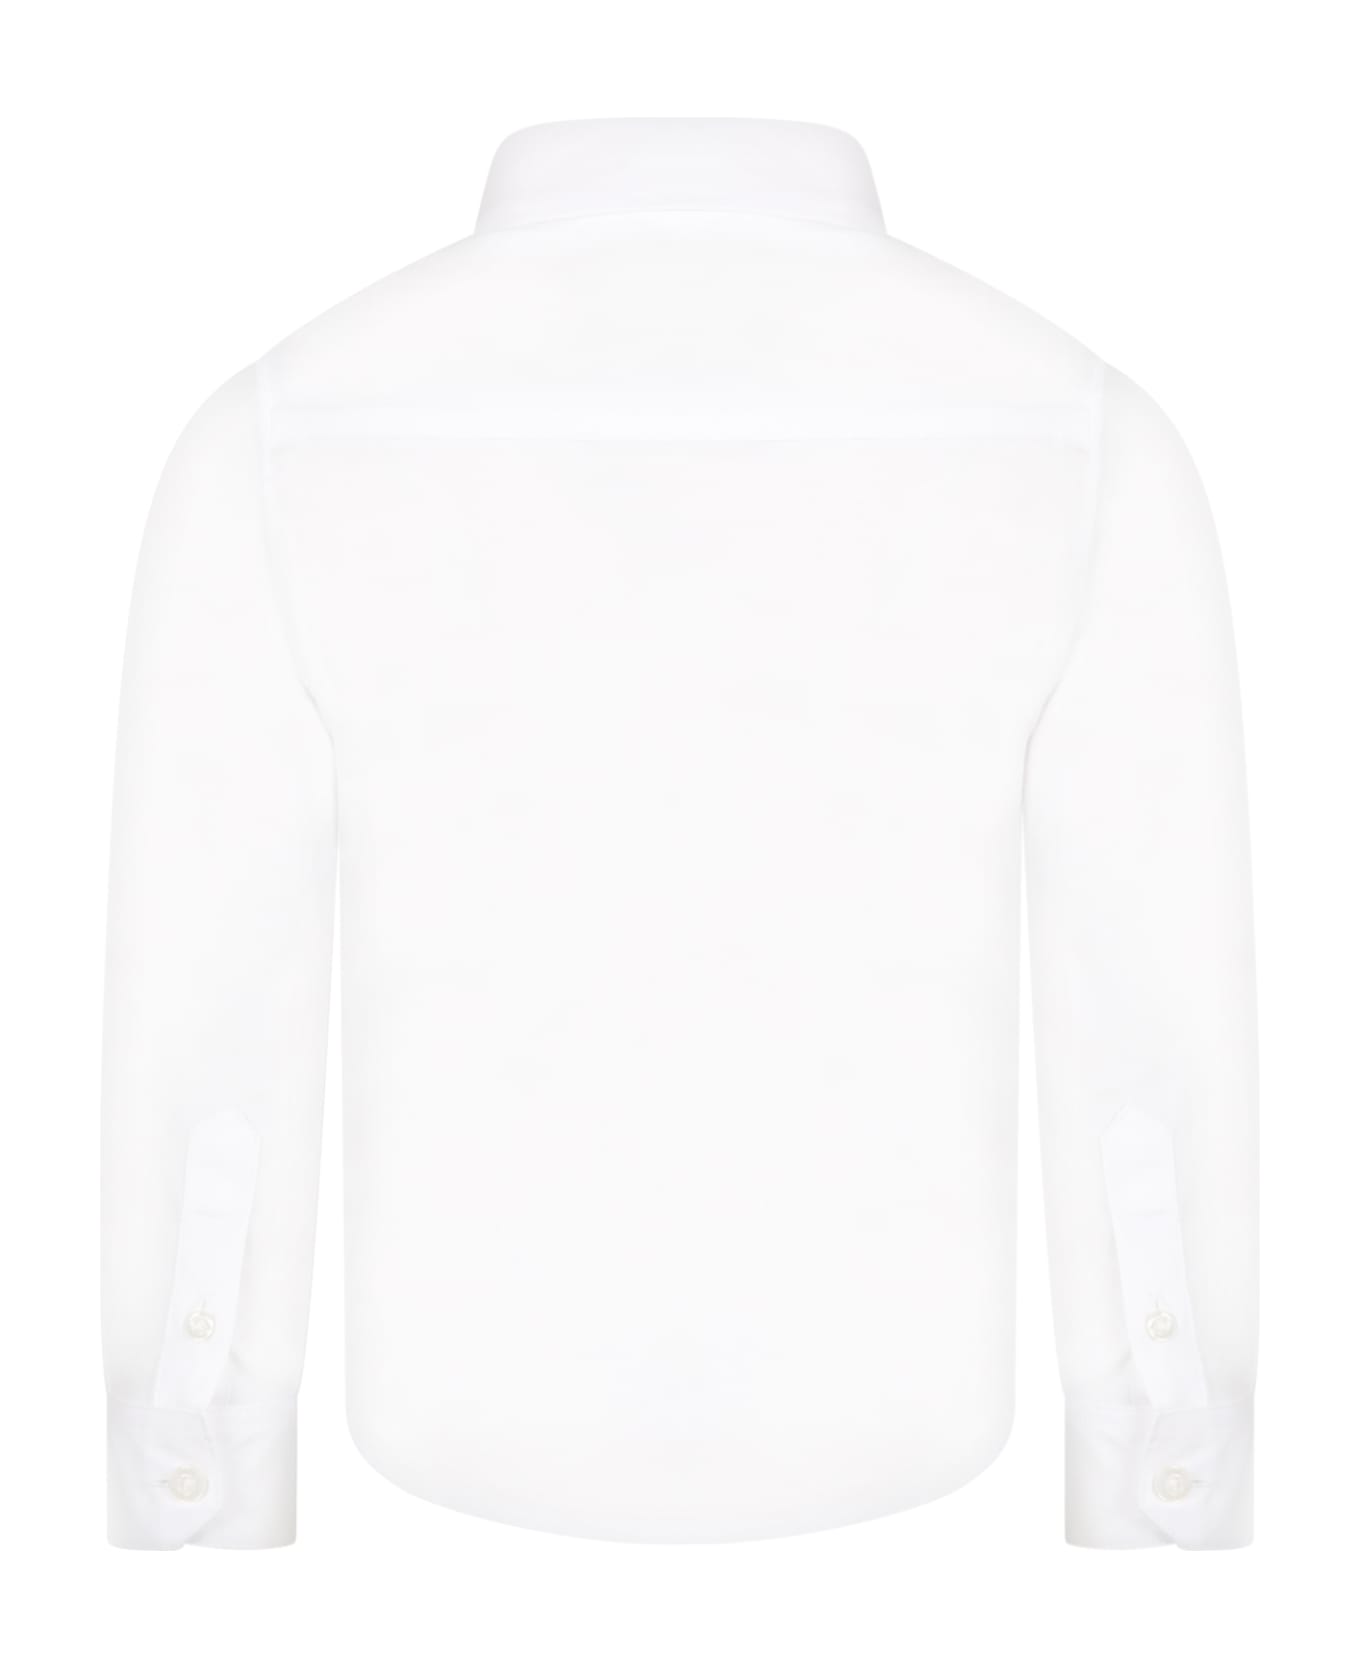 Hugo Boss White Shirt For Boy With Logo - White シャツ